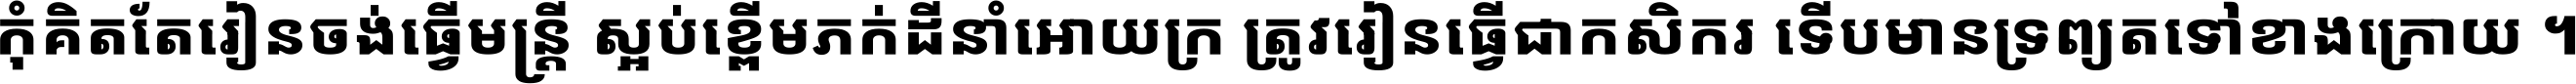 Noto Sans Khmer UI ExtraBold